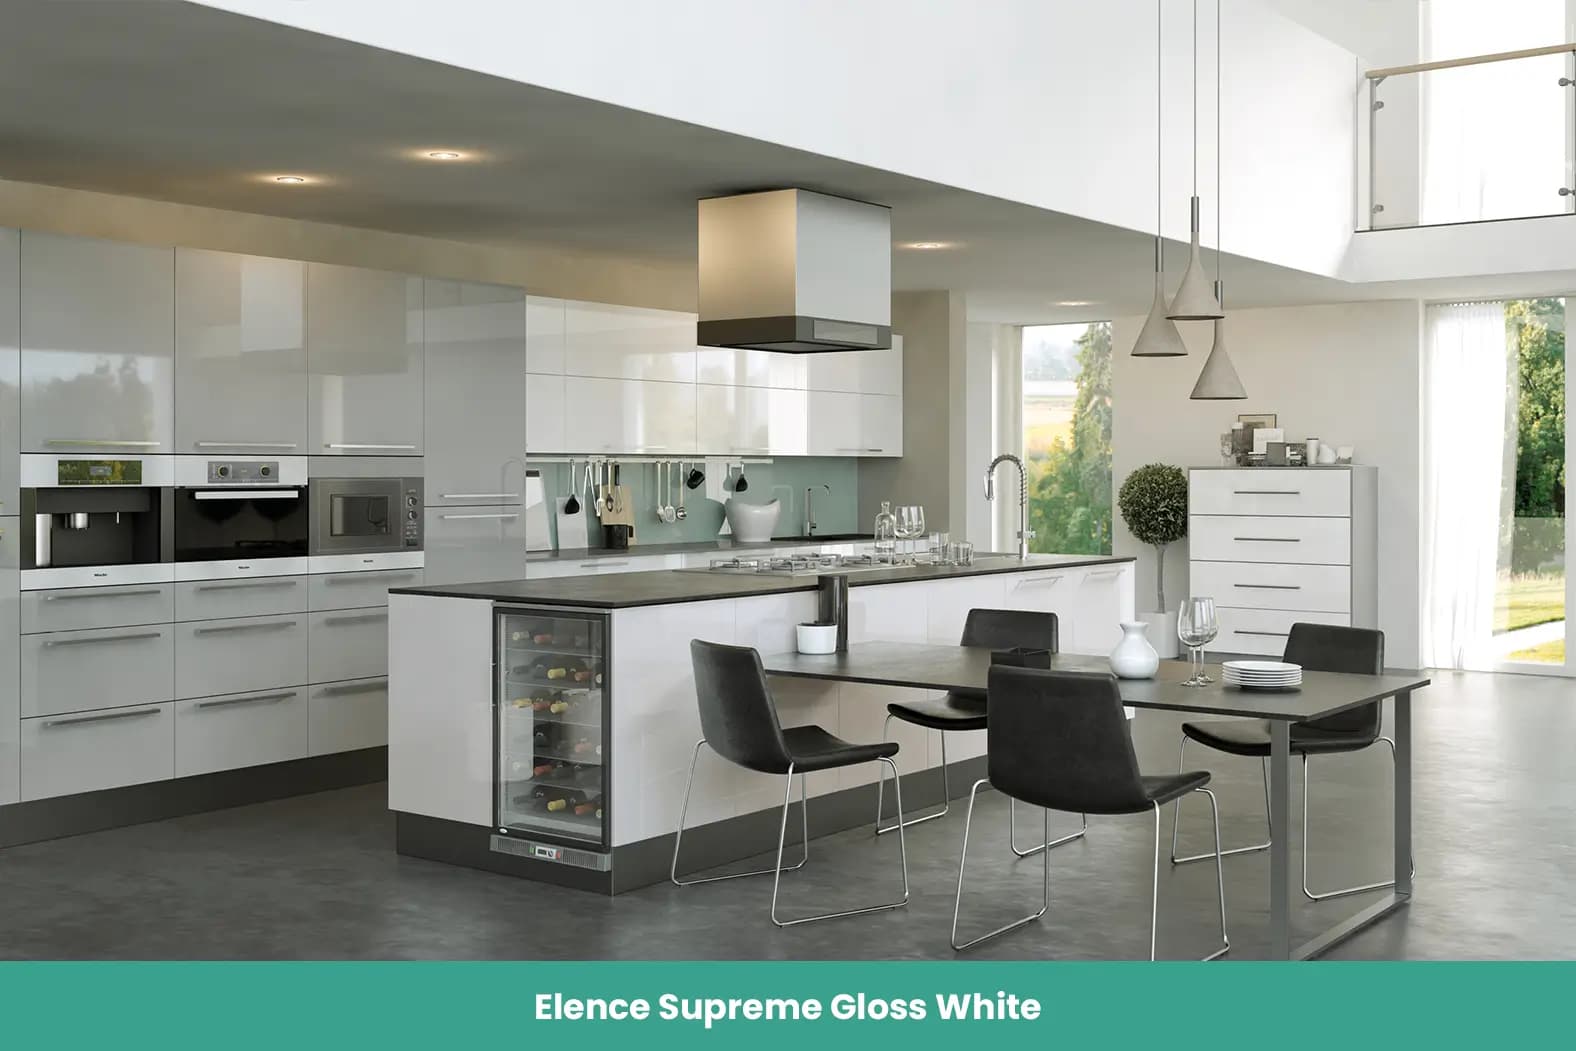 Elence Supreme Gloss White kitchen